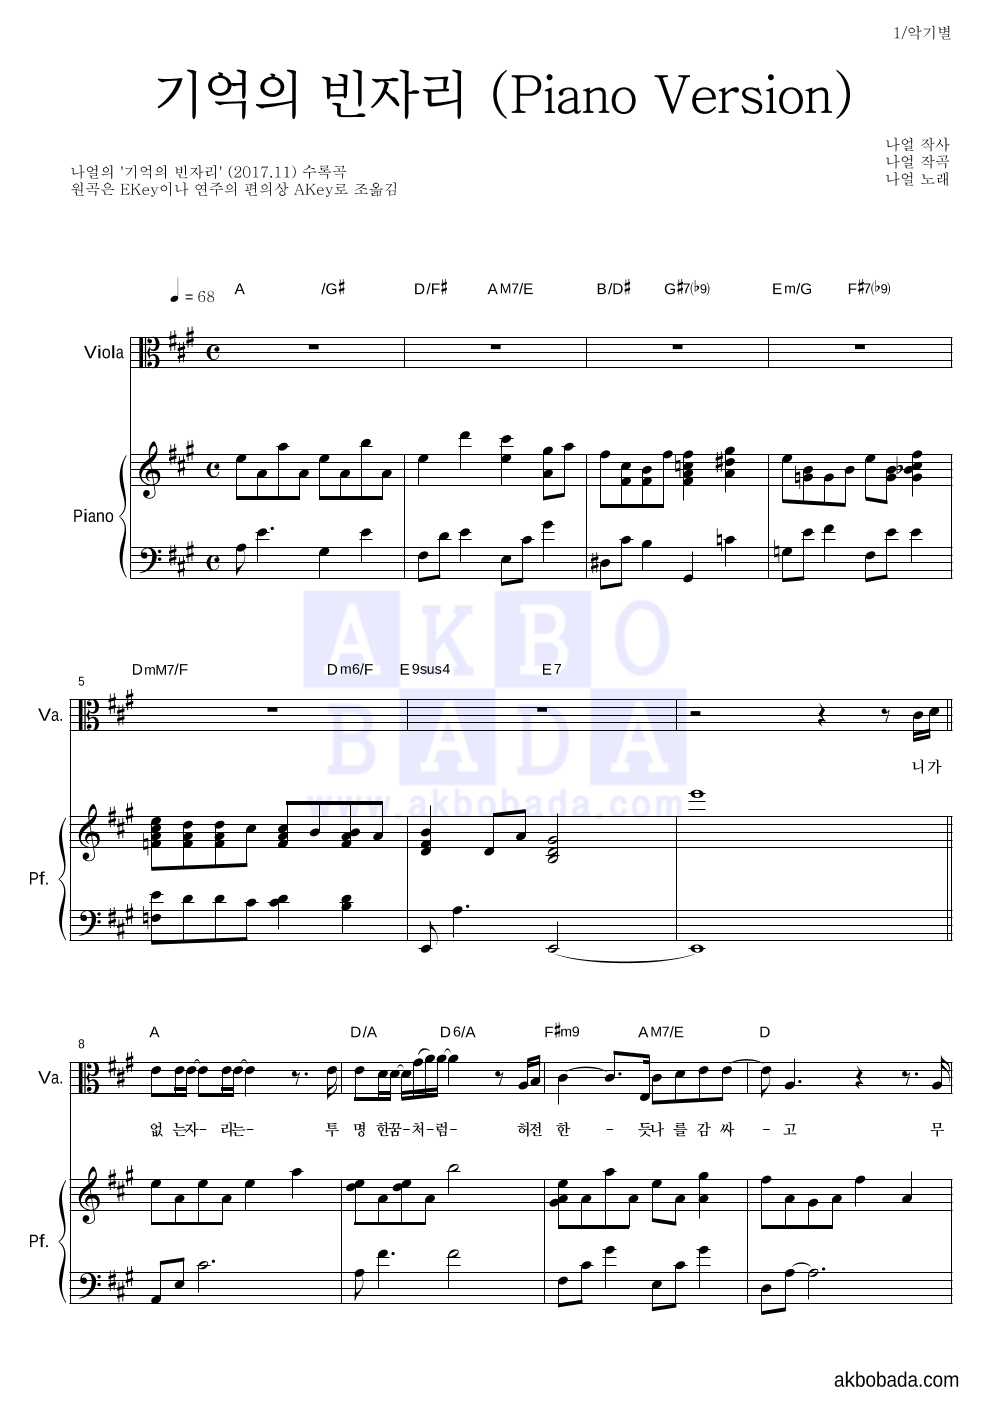 나얼 - 기억의 빈자리 (Piano Version) 비올라&피아노 악보 